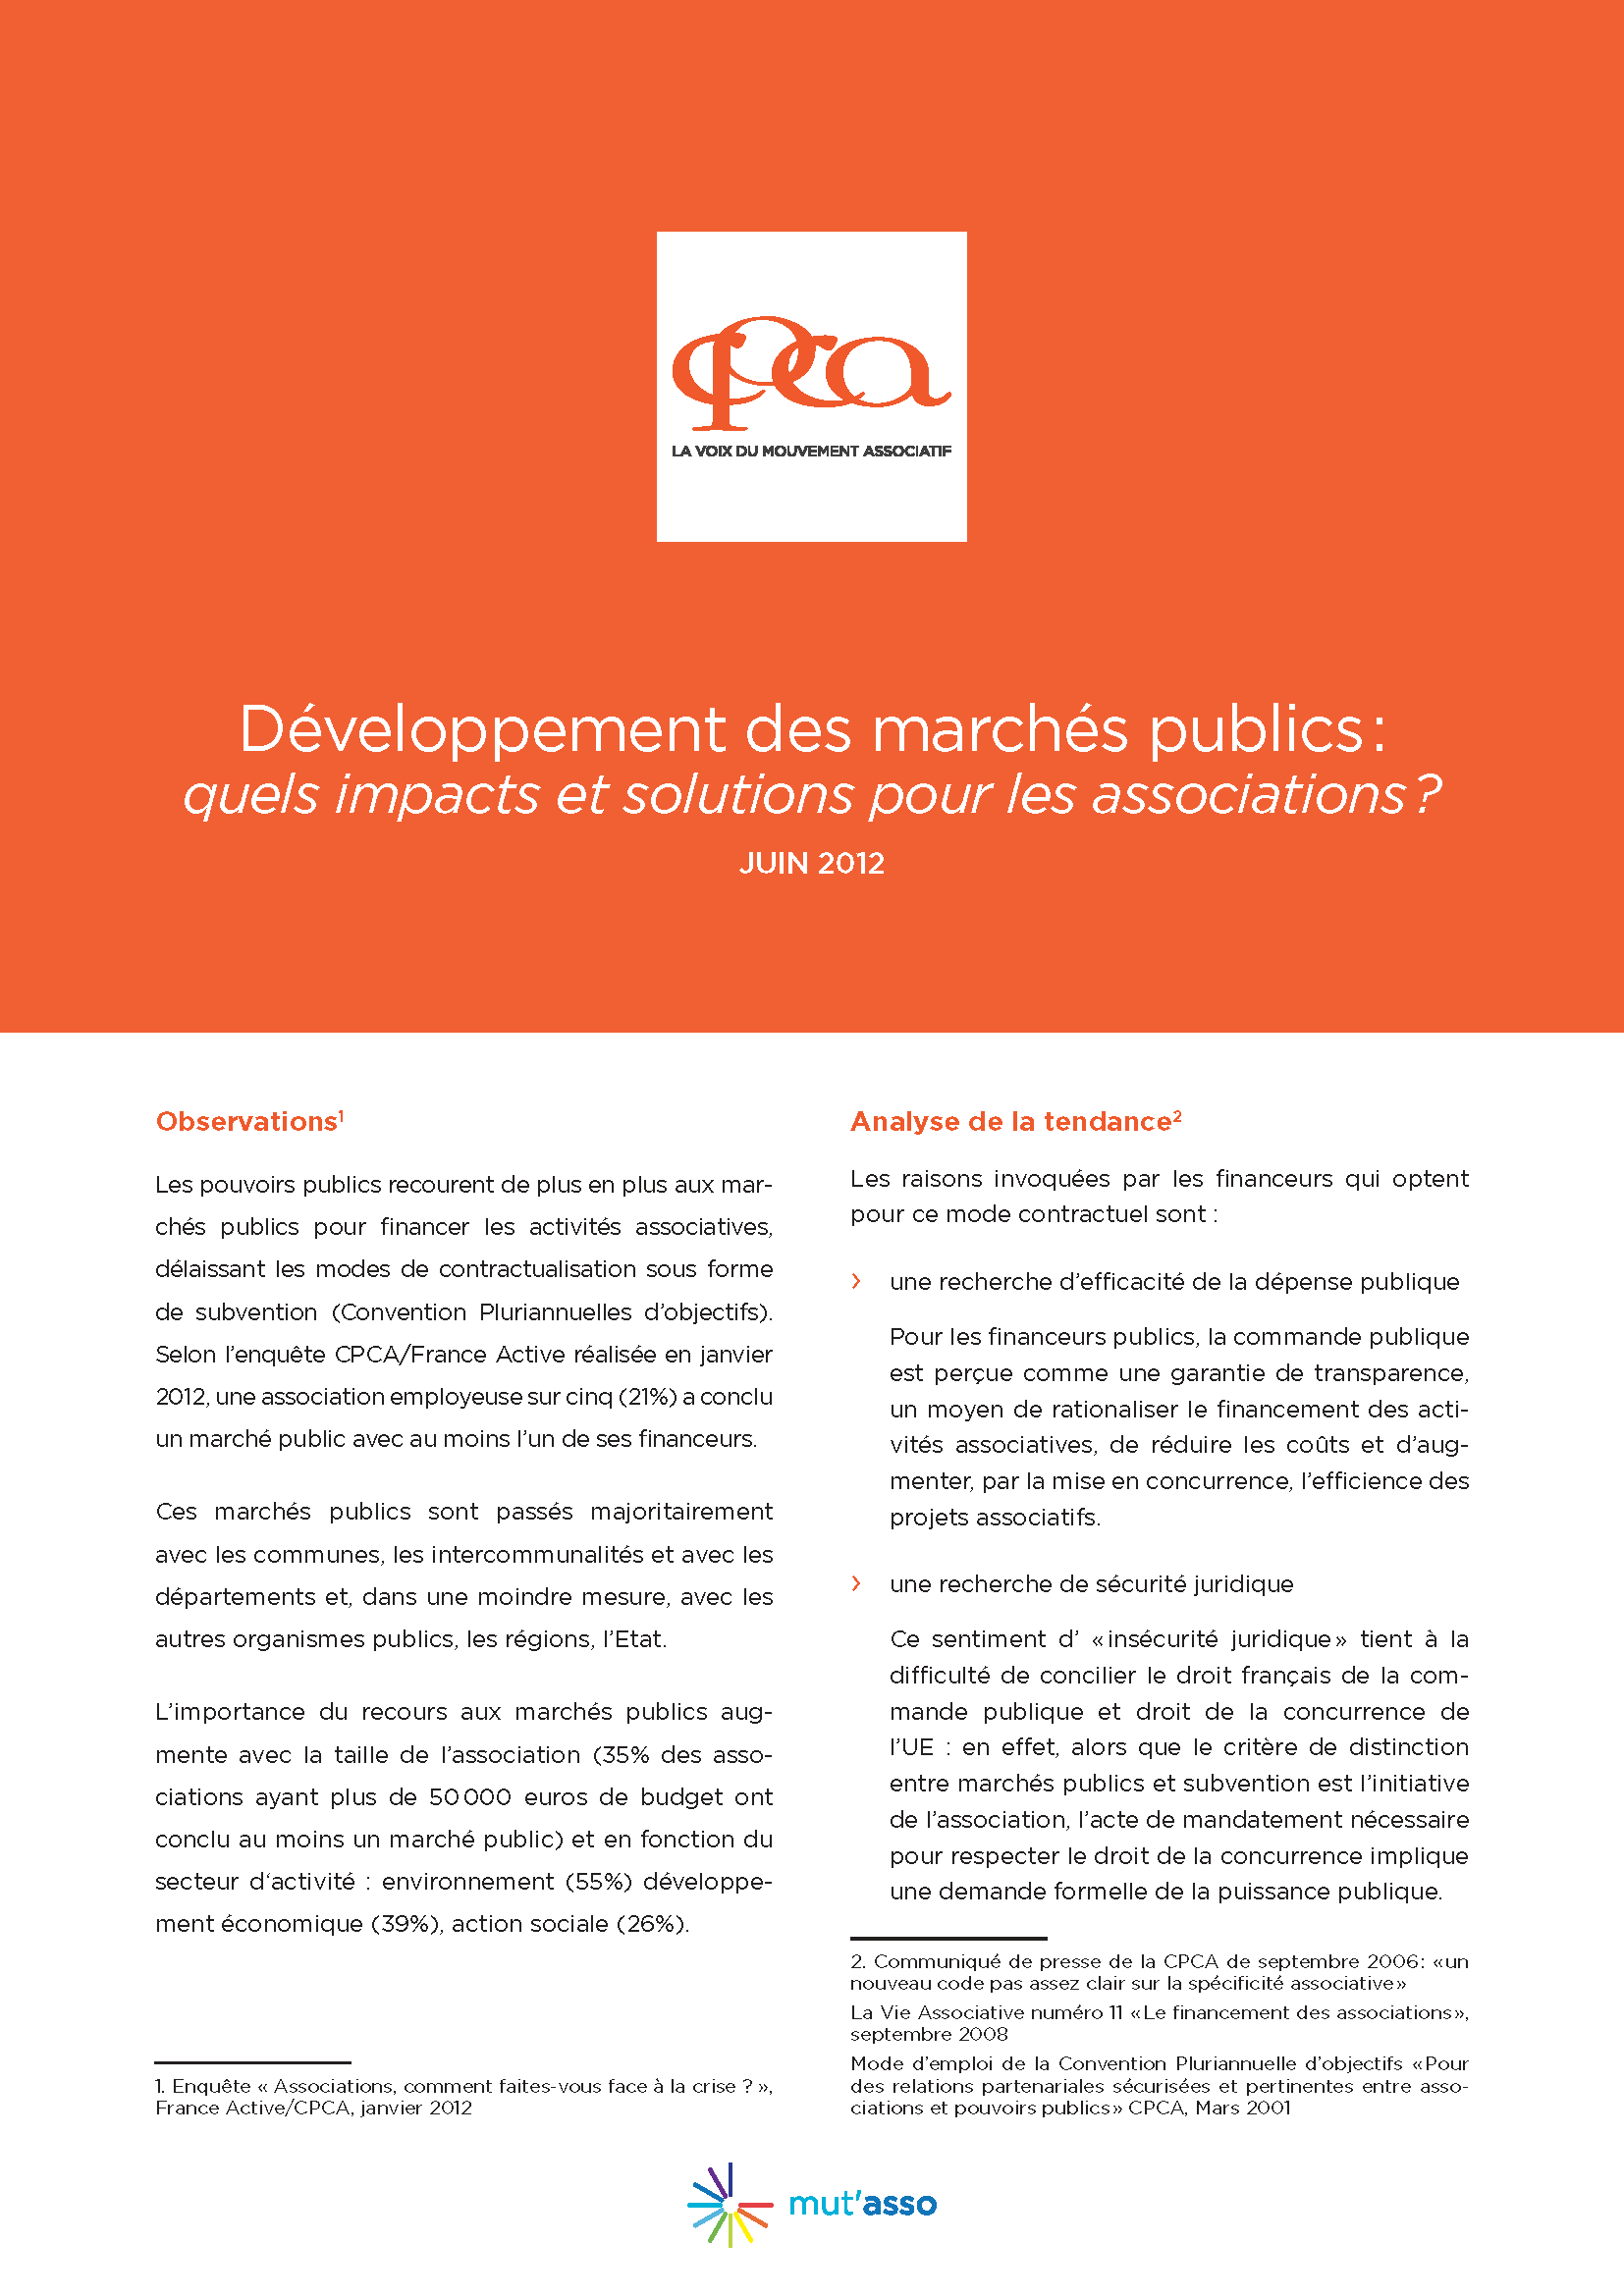 Développement des marchés publics: quels impacts et solutions pour les associations ?